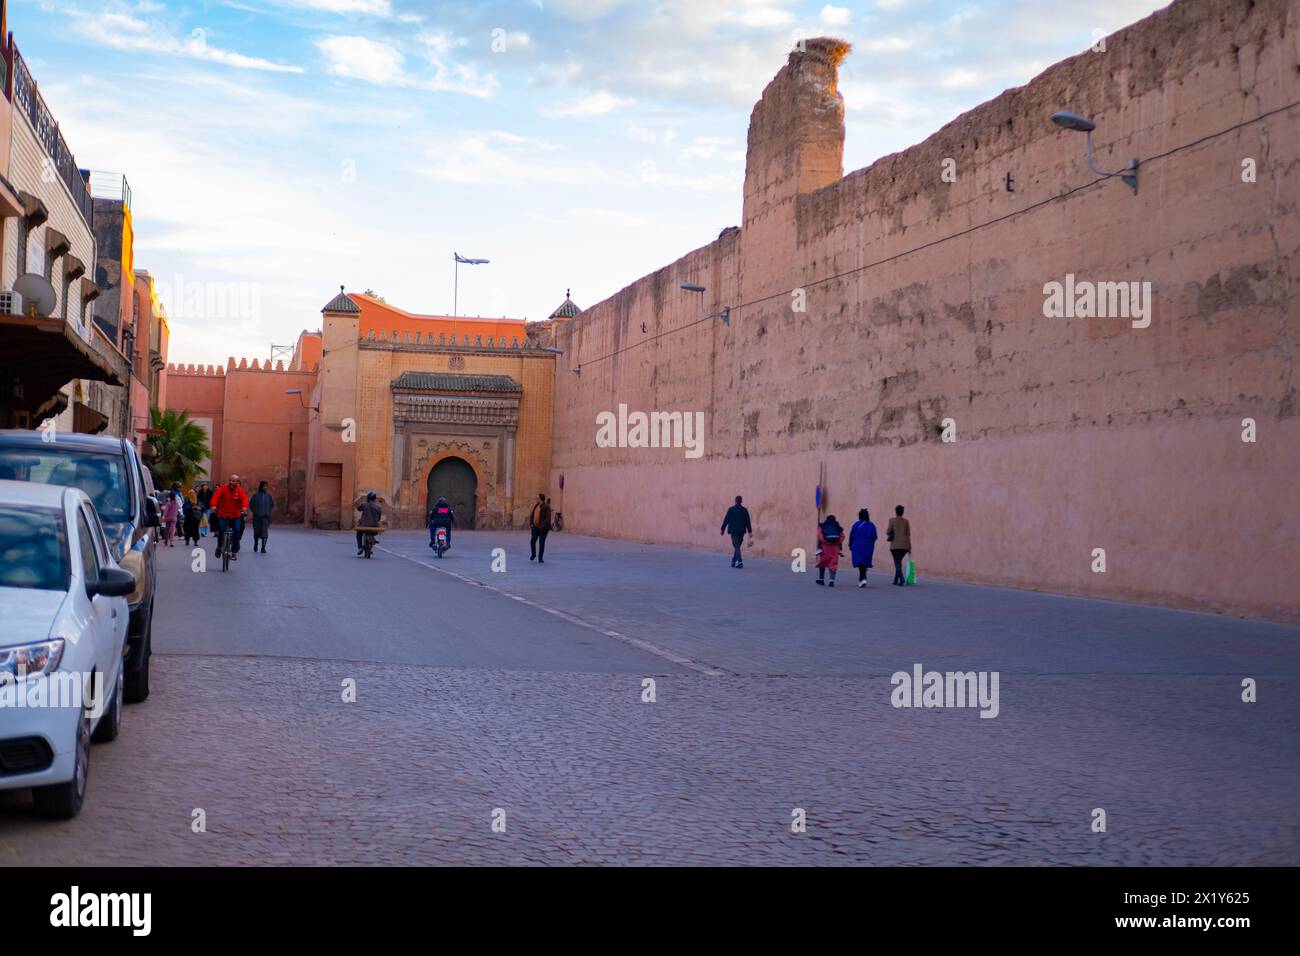 La gente cammina lungo l'alto muro della città Rossa di Marrakech affrettati a dedicarsi agli affari, all'autentico paesaggio urbano africano, alle attività quotidiane e alle interazioni che la gente vive Foto Stock